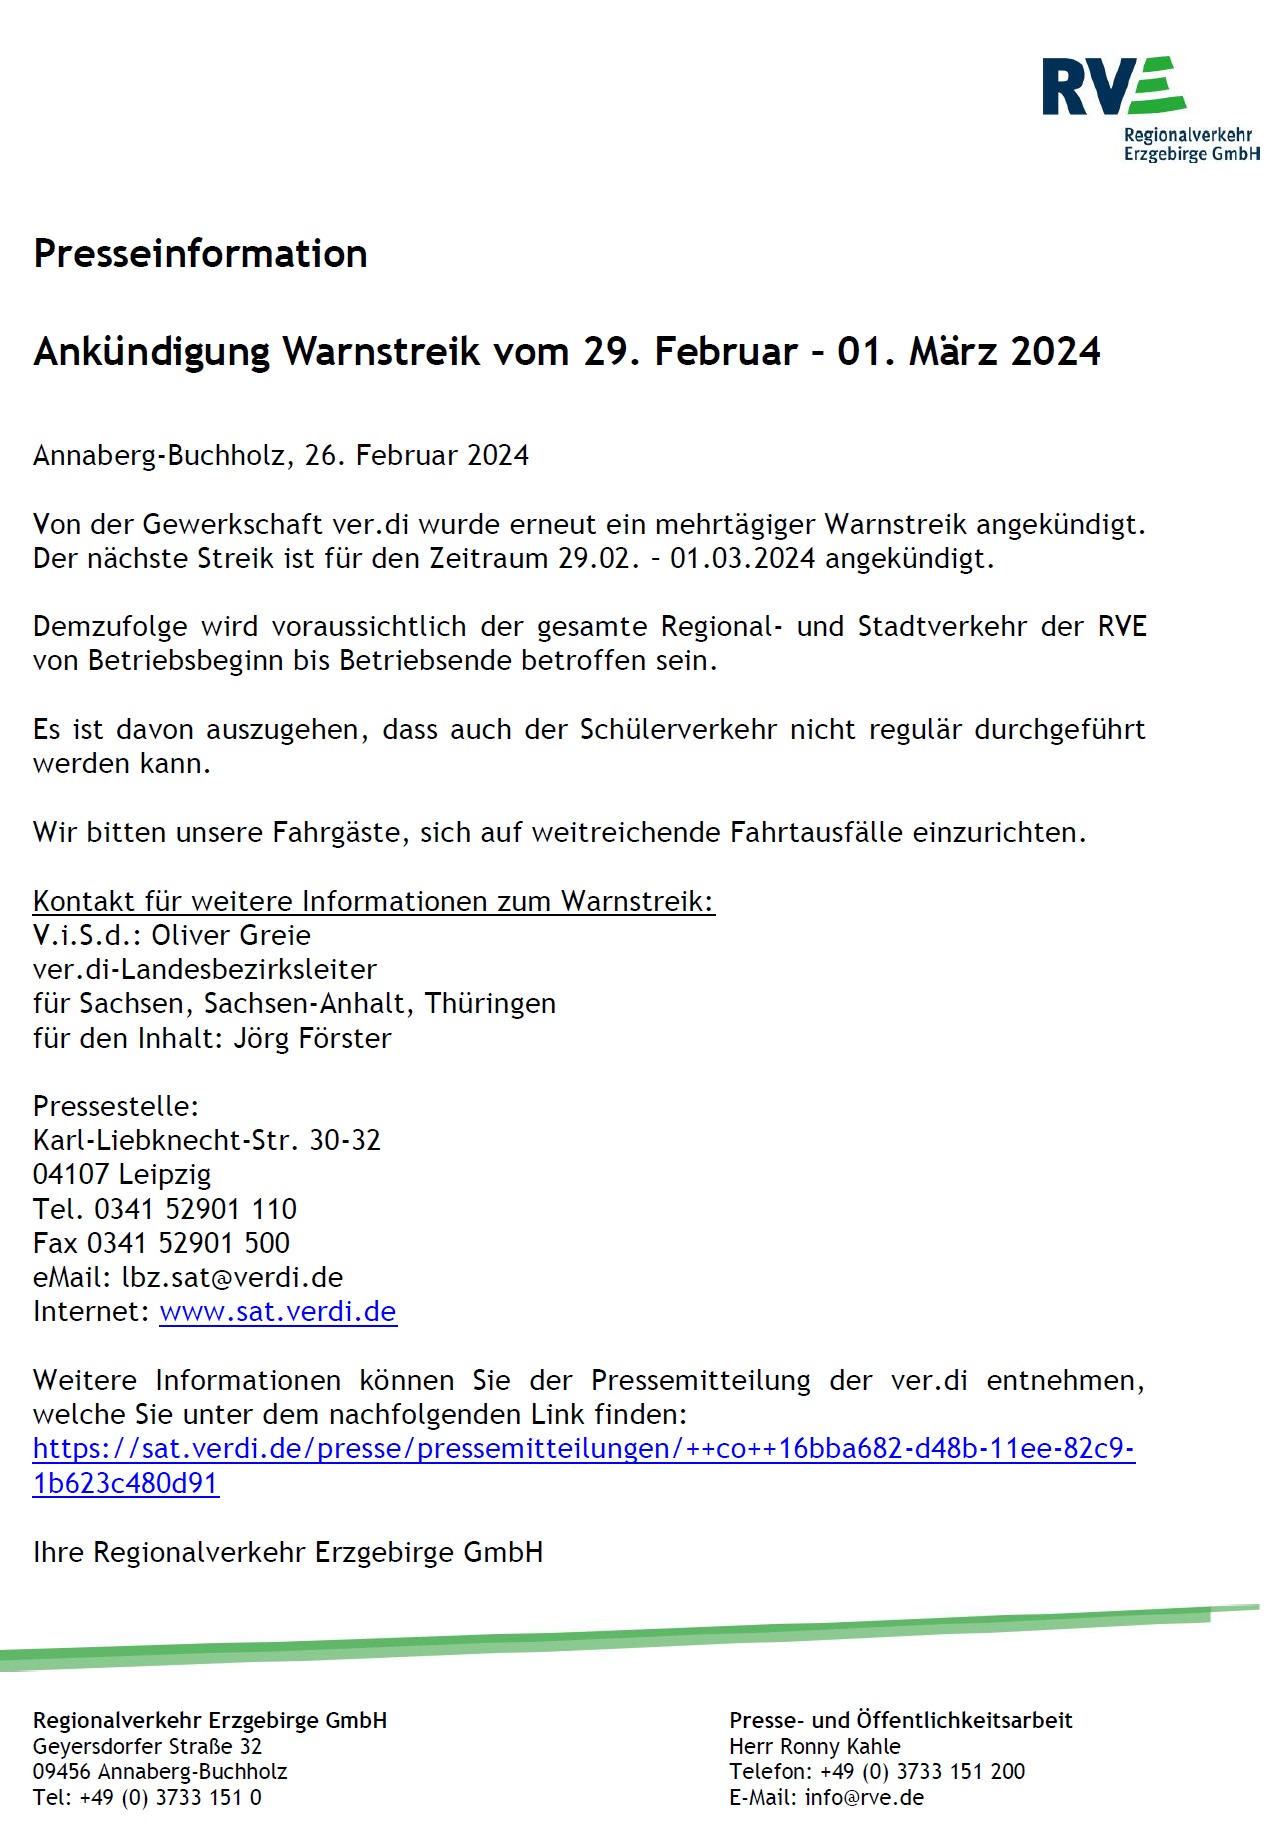 Pressemitteilung der RVE - Ankündigung Warnstreik (29.2. - 01.03.2024) - Bild 1